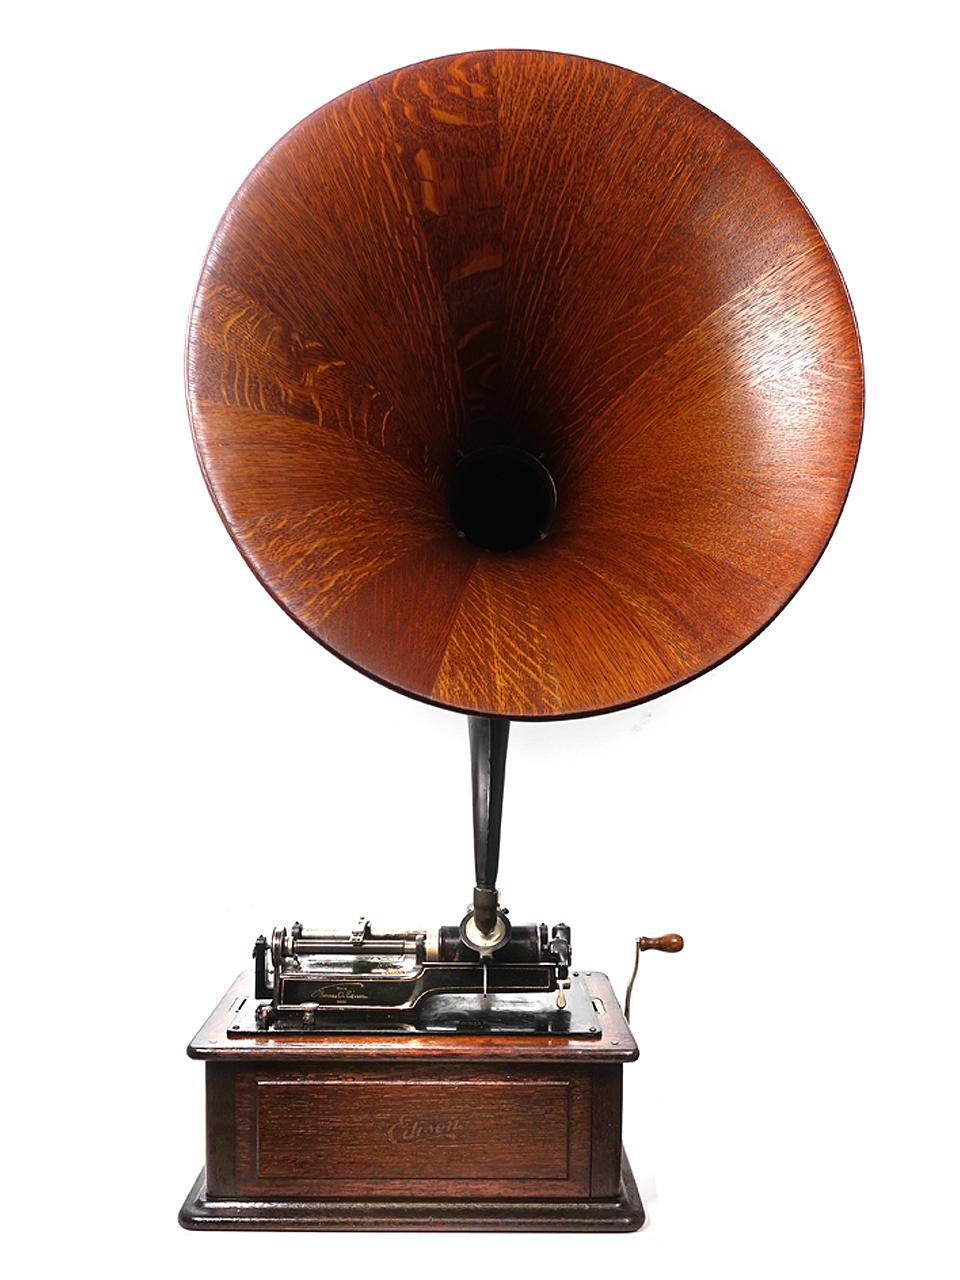 Dies war die letzte Innovation des Edison-Phonographen - der beeindruckende und exklusive Triumph:: den sich damals nur die Wohlhabenden leisten konnten und der als eines der besten Wiedergabegeräte galt:: die Edison je hergestellt hatte. Diese